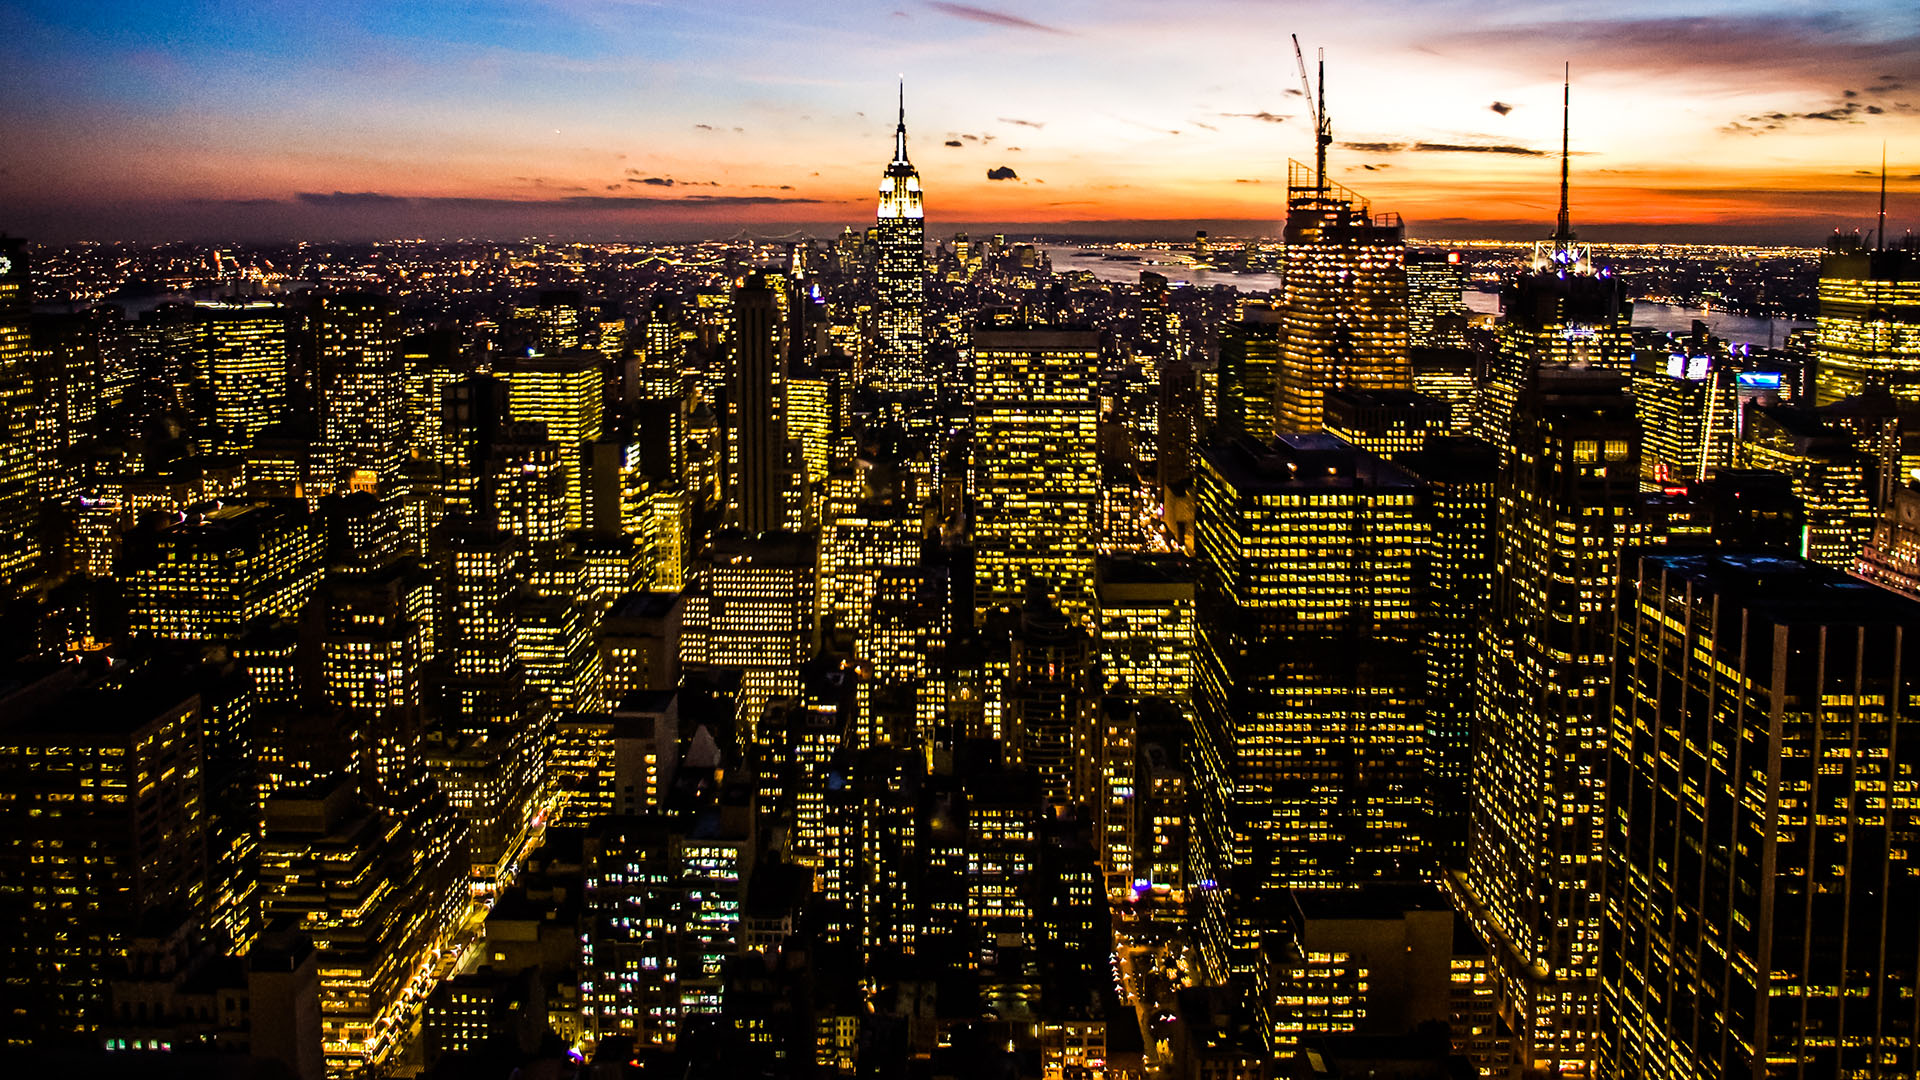 Foto panorâmica de cidade ao anoitecer com muitos prédios iluminados